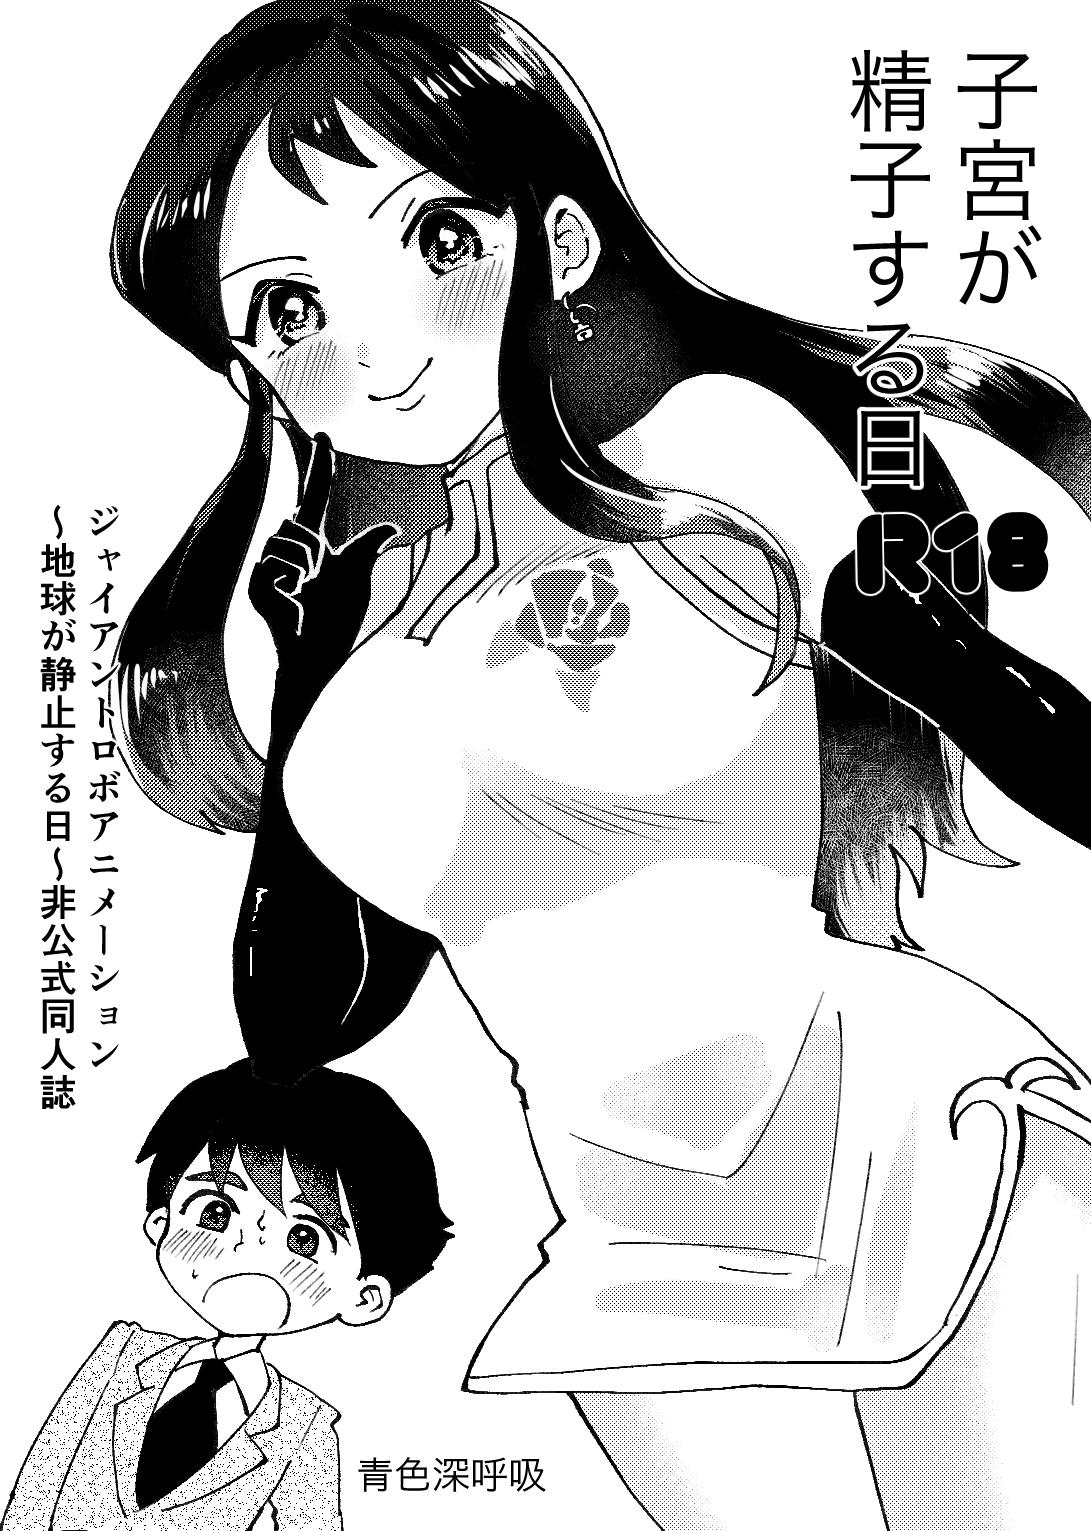 Bisex Shikyuu ga Seishi suru Hi - Giant robo Czech - Page 1